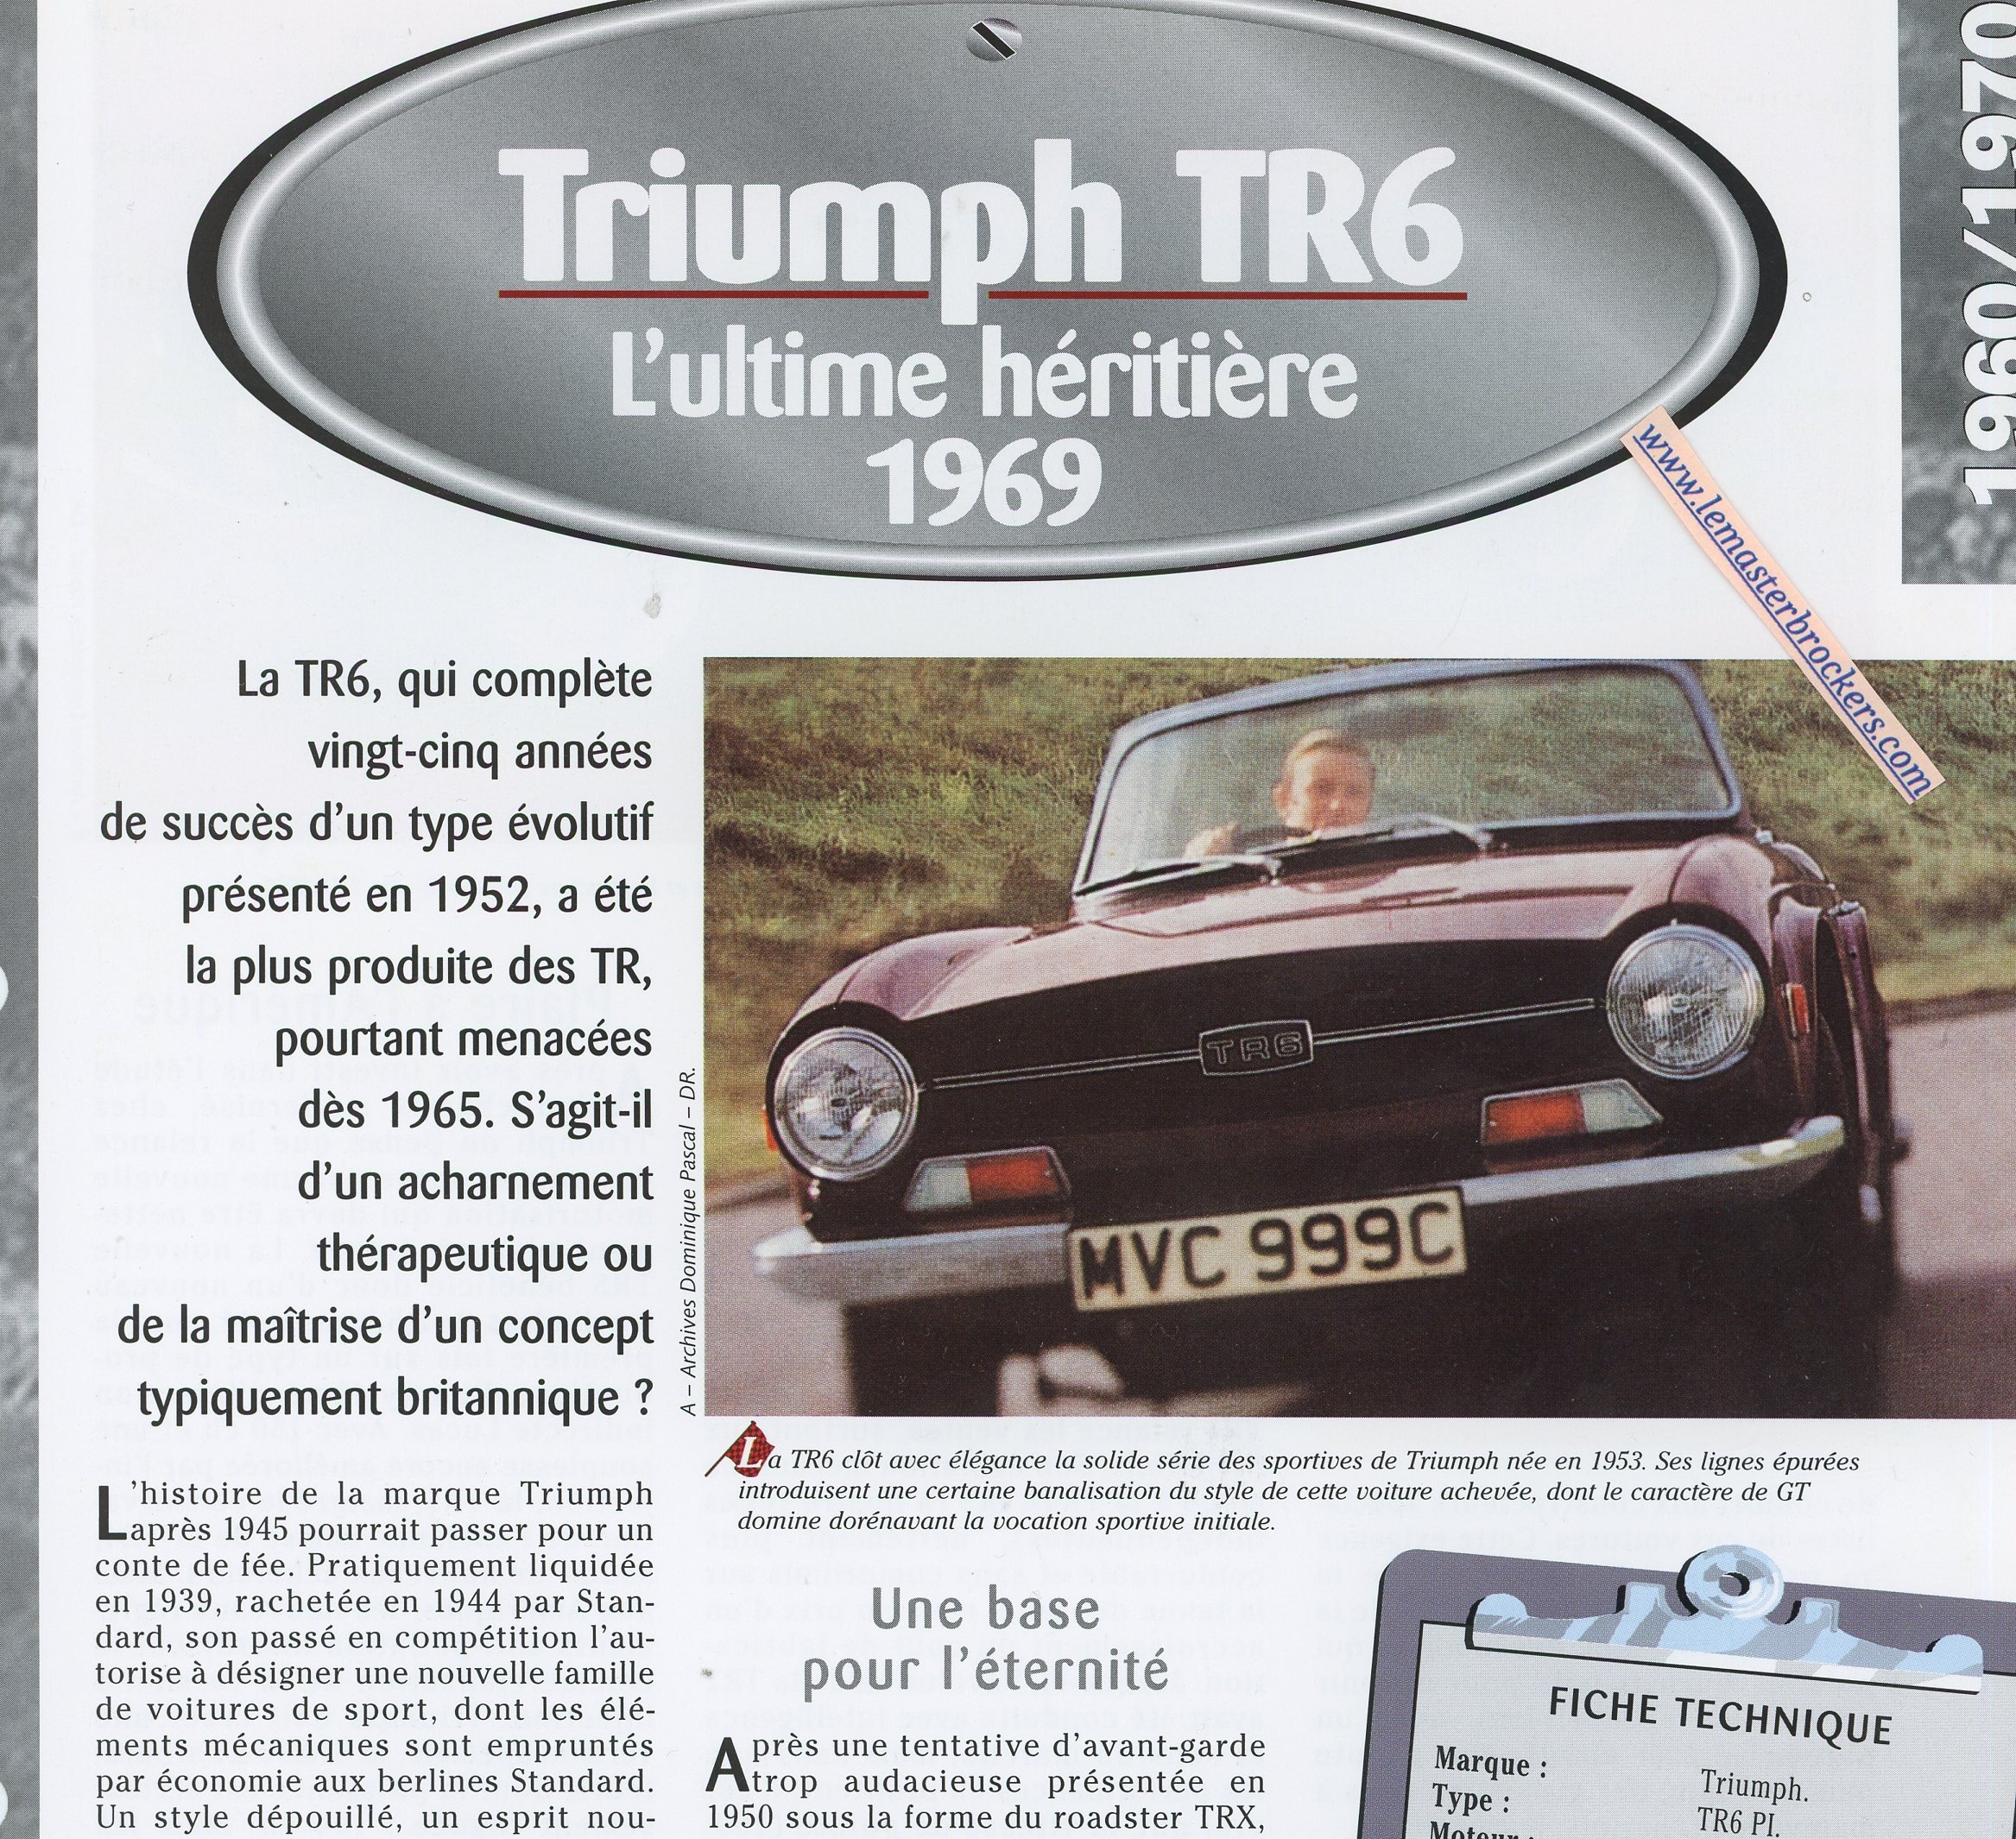 TRIUMPH-TR6-1969-FICHE-TECHNIQUE-VOITURE-LEMASTERBROCKERS